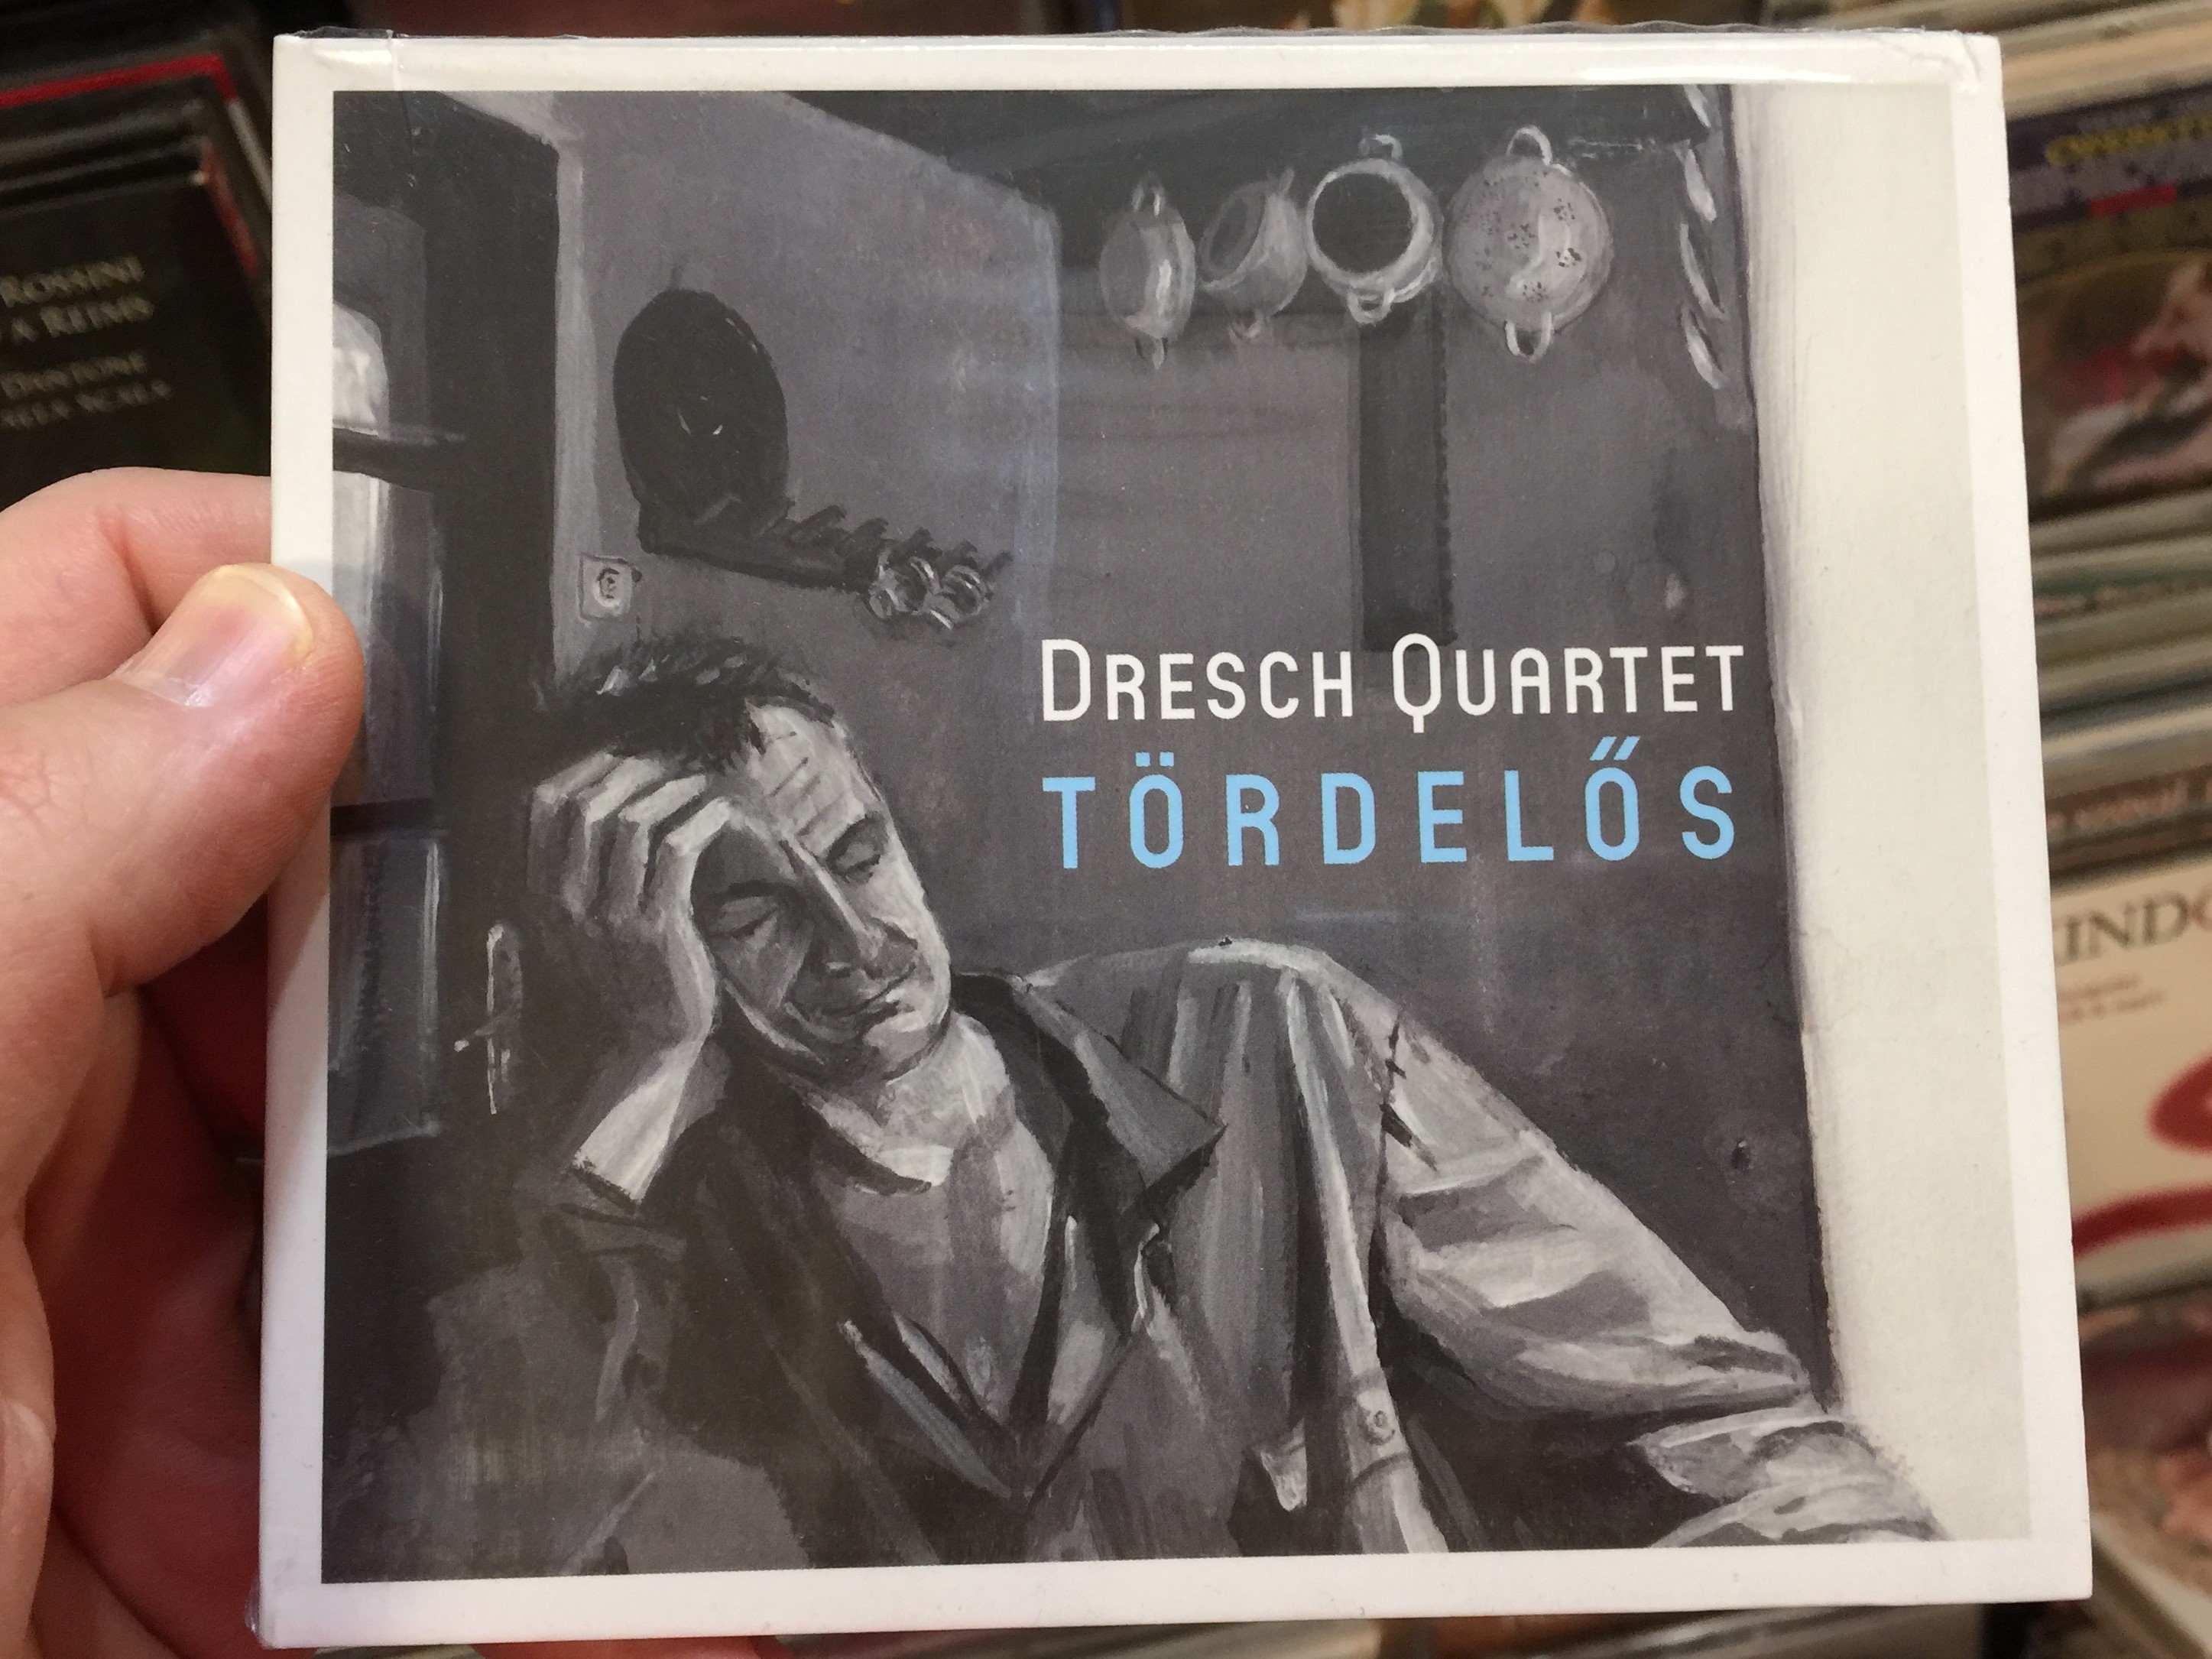 dresch-quartet-t-rdel-s-fon-records-audio-cd-2016-fa-381-2-1-.jpg